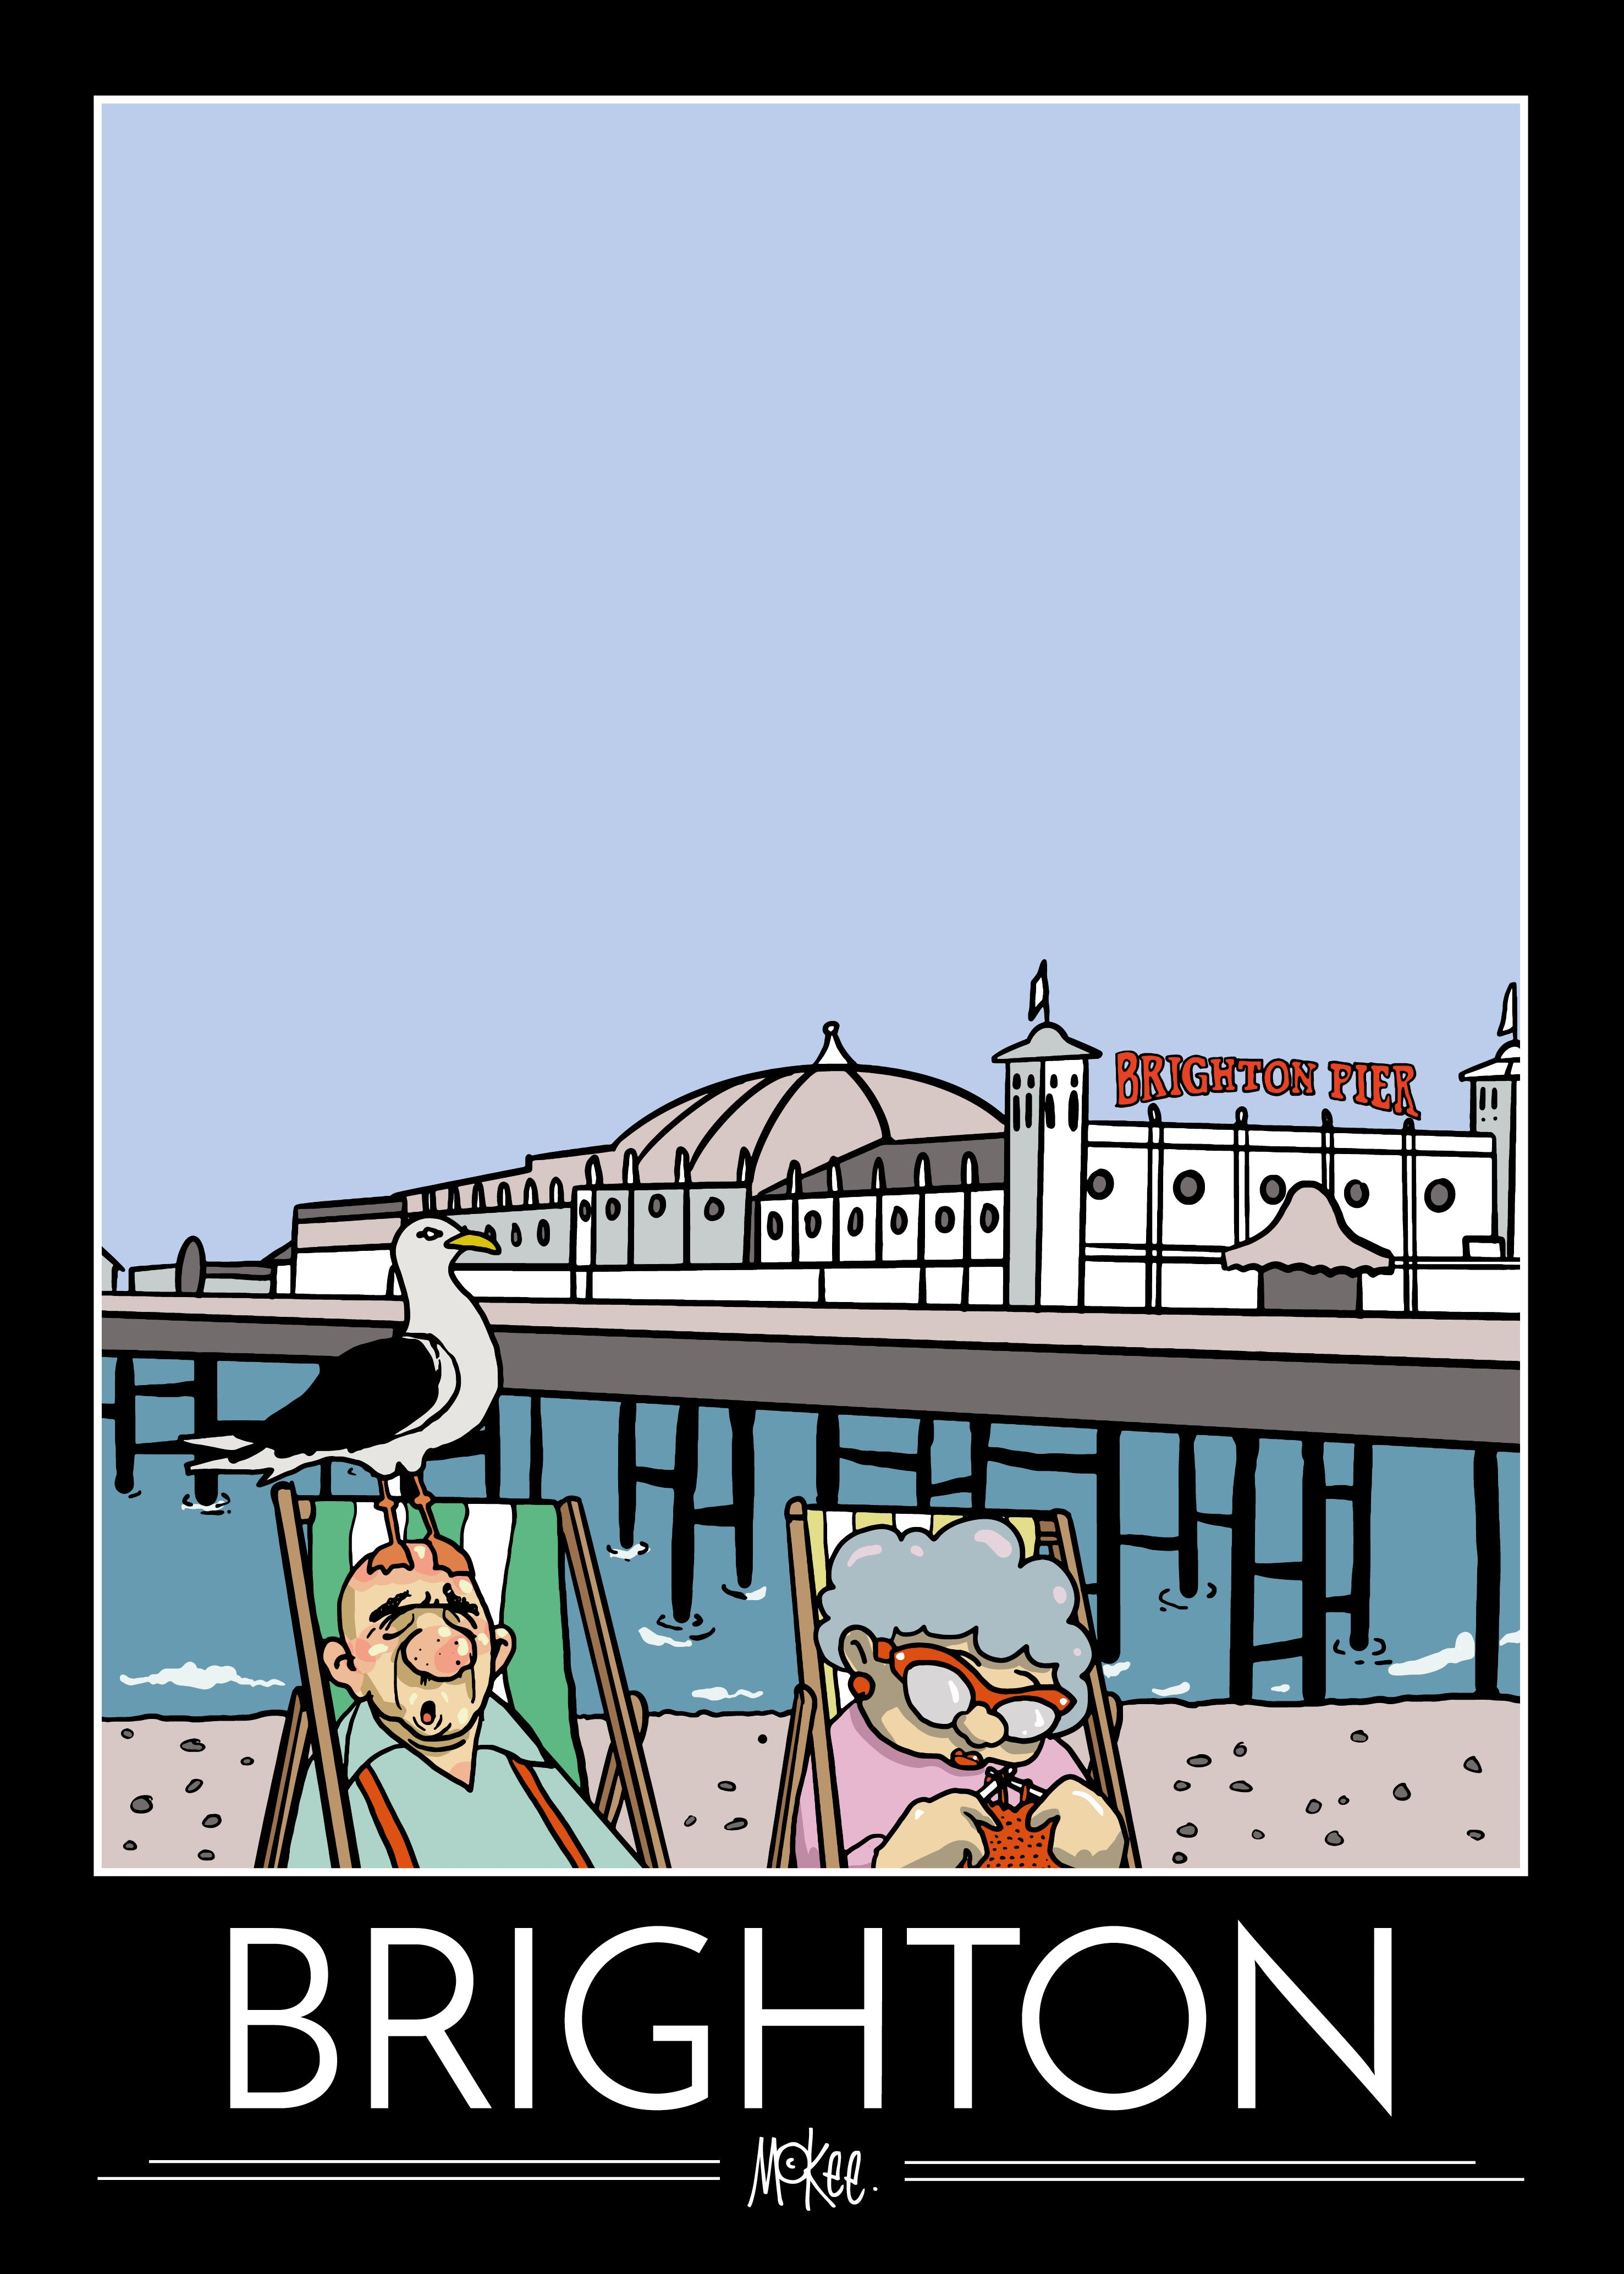 Brighton Tourist Poster